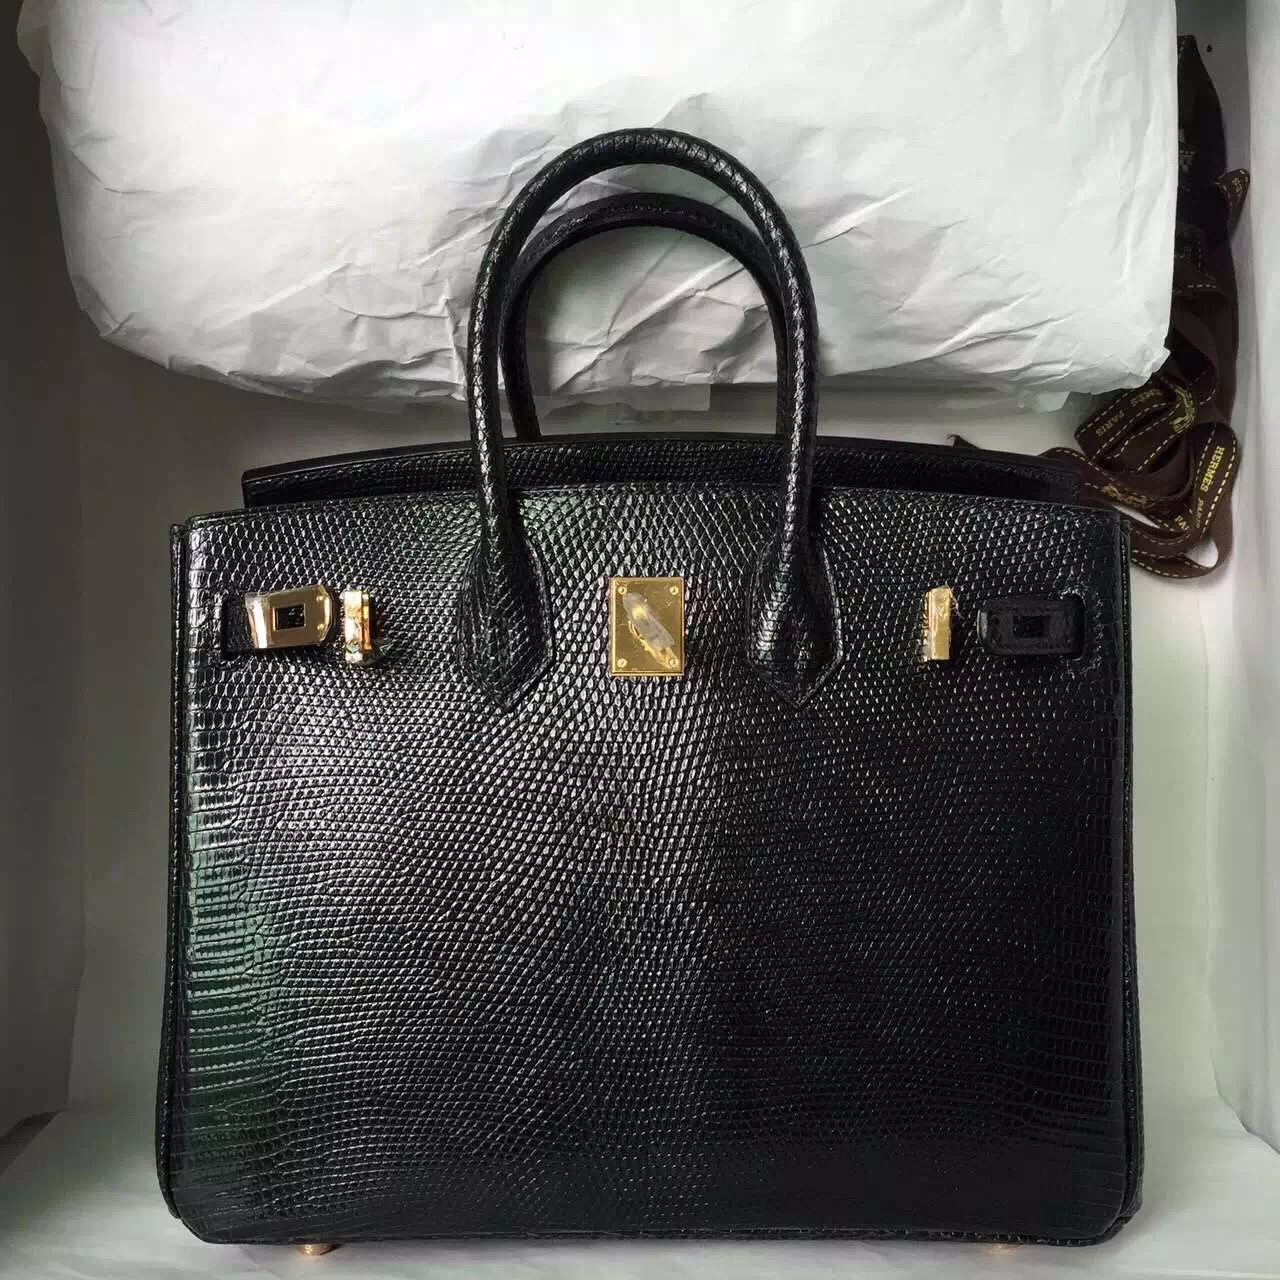 Wholesale Hermes Lizard Leather Birkin25 in CK89 Black — Hermes Crocodile Birkin Bag